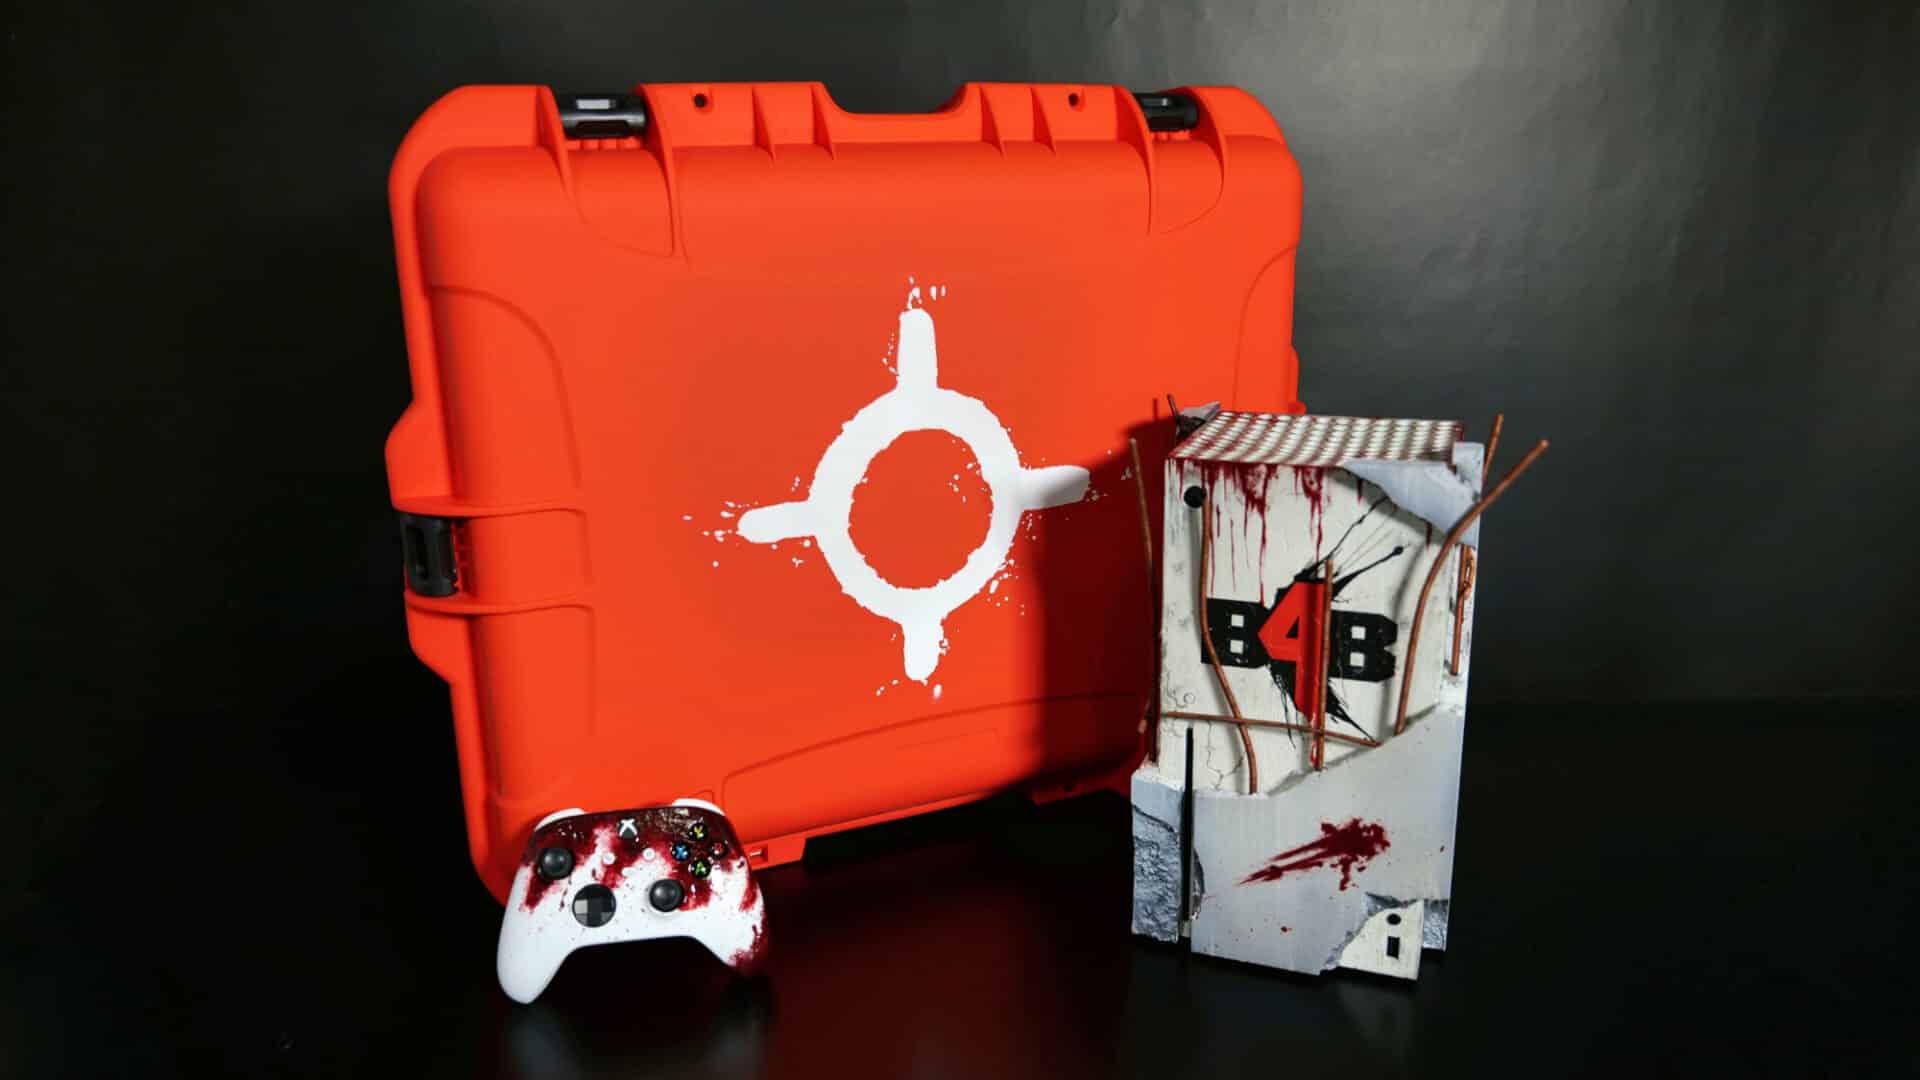 Aperçu de la console et manette Back 4 Blood, placées devant une caisse protectrice de couleur orange vif.